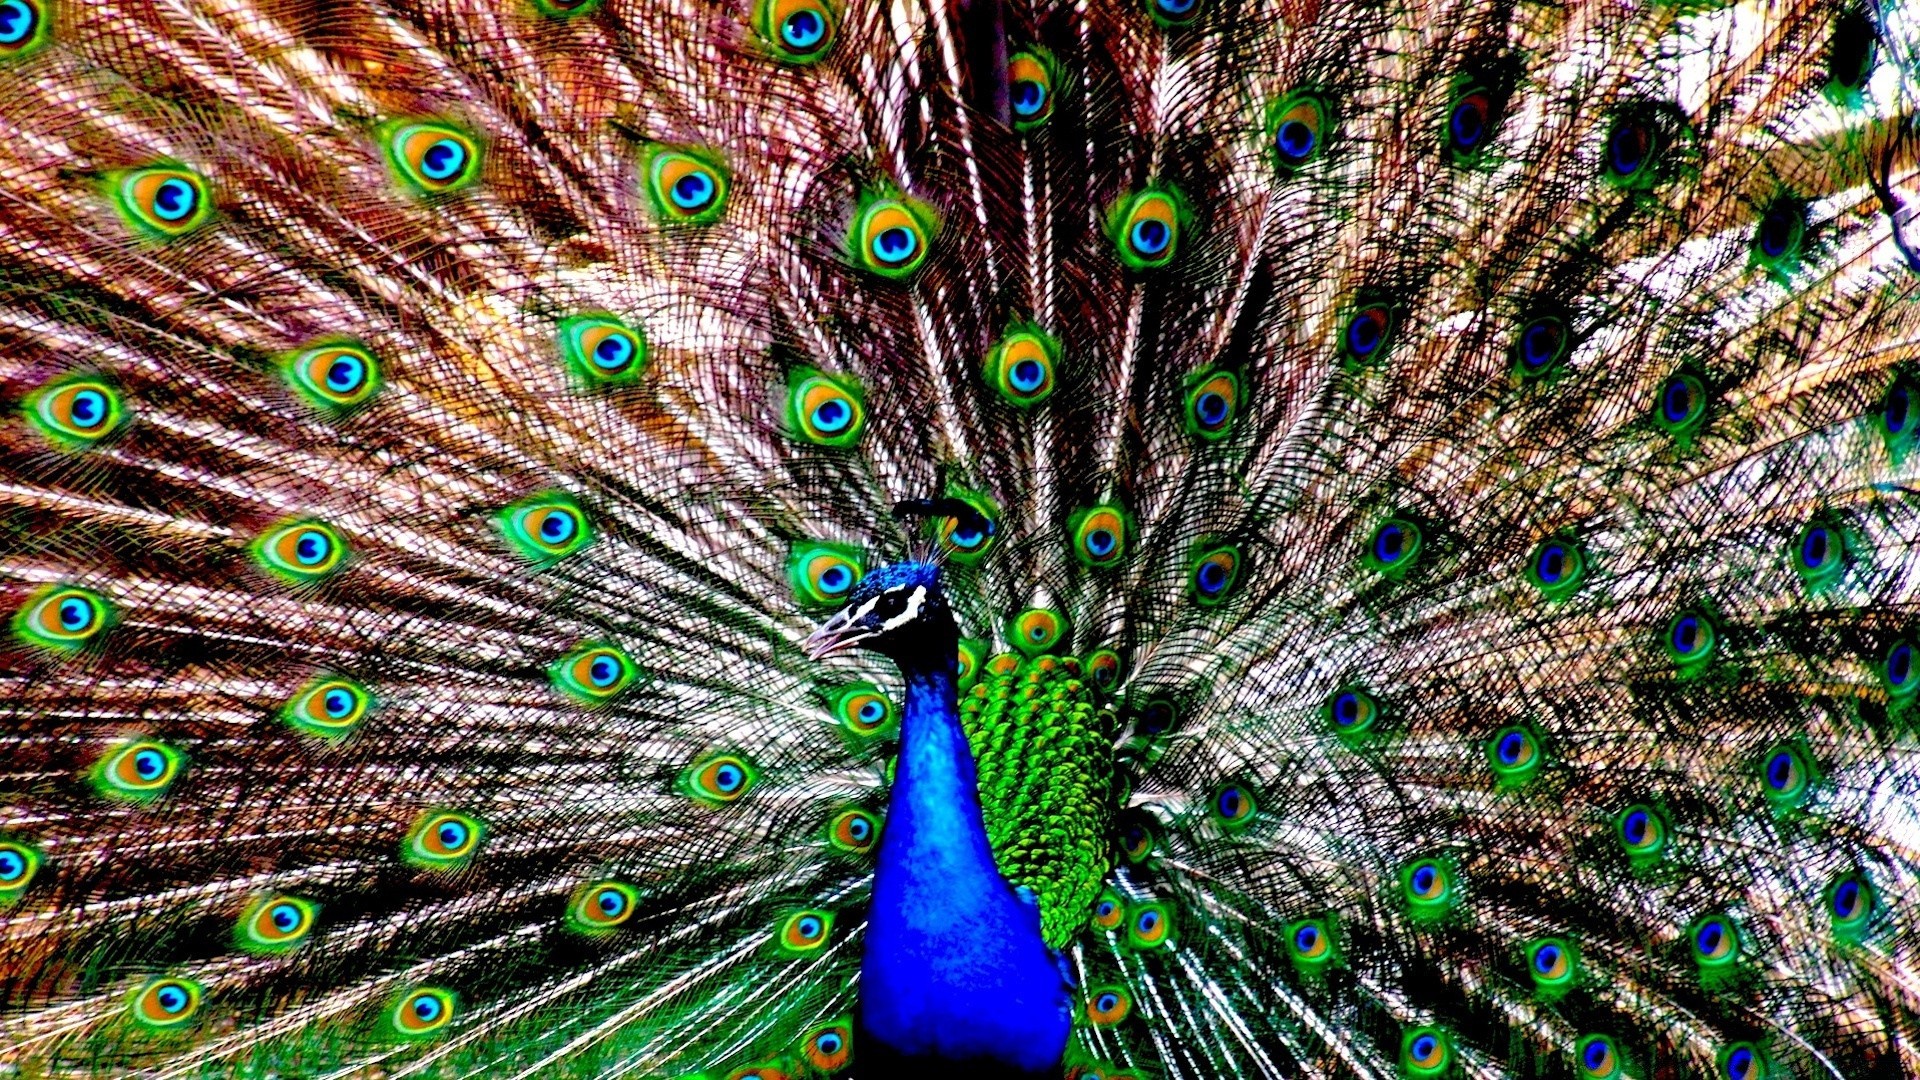 павлин перо птица павлин танцы ритуал хвост выставка яркие шаблон мульти яркий бирюза энергии тропический природа рабочего стола петушок цвет шея